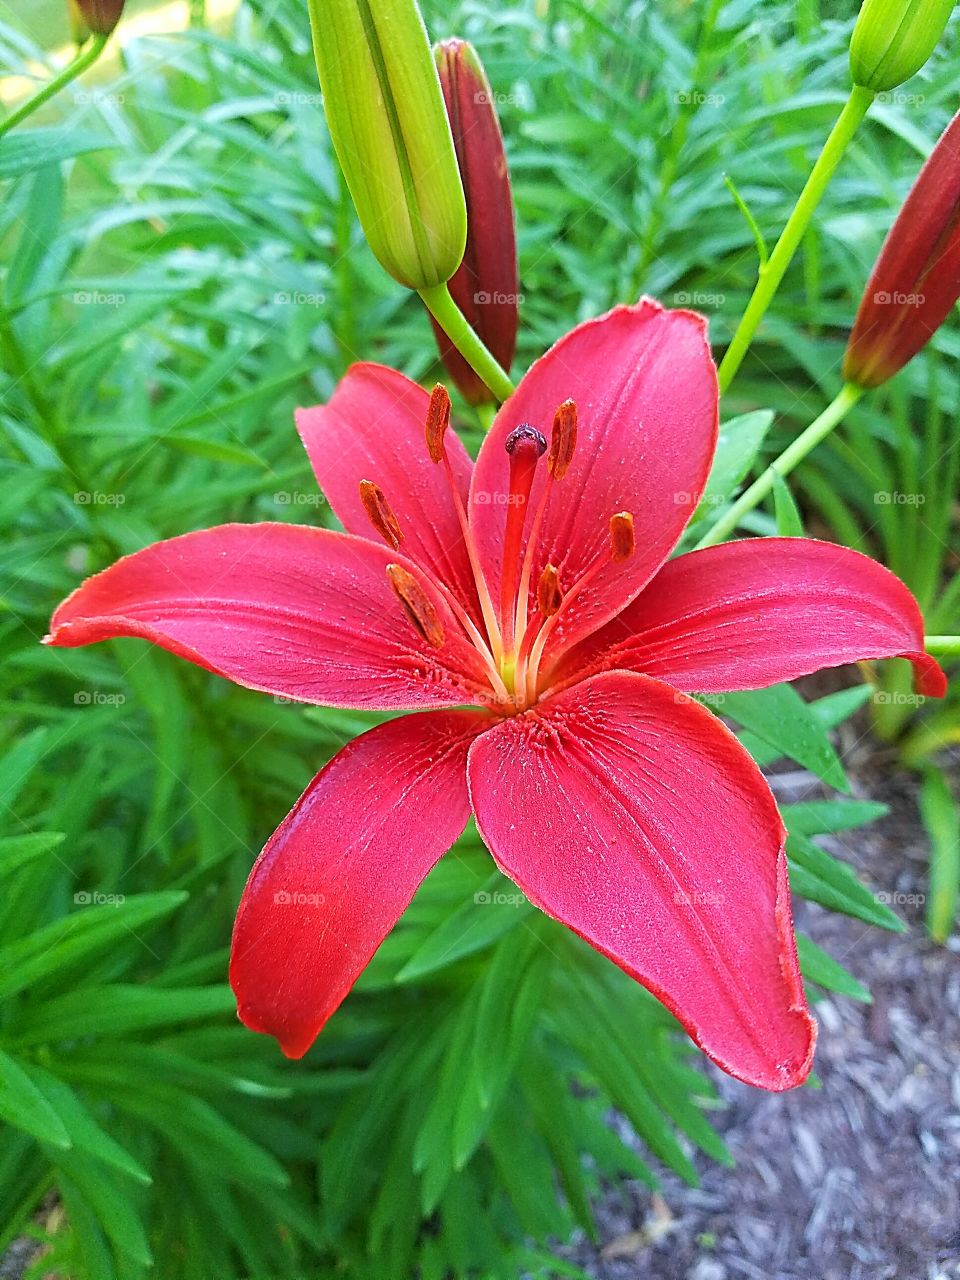 fuscia colored lily